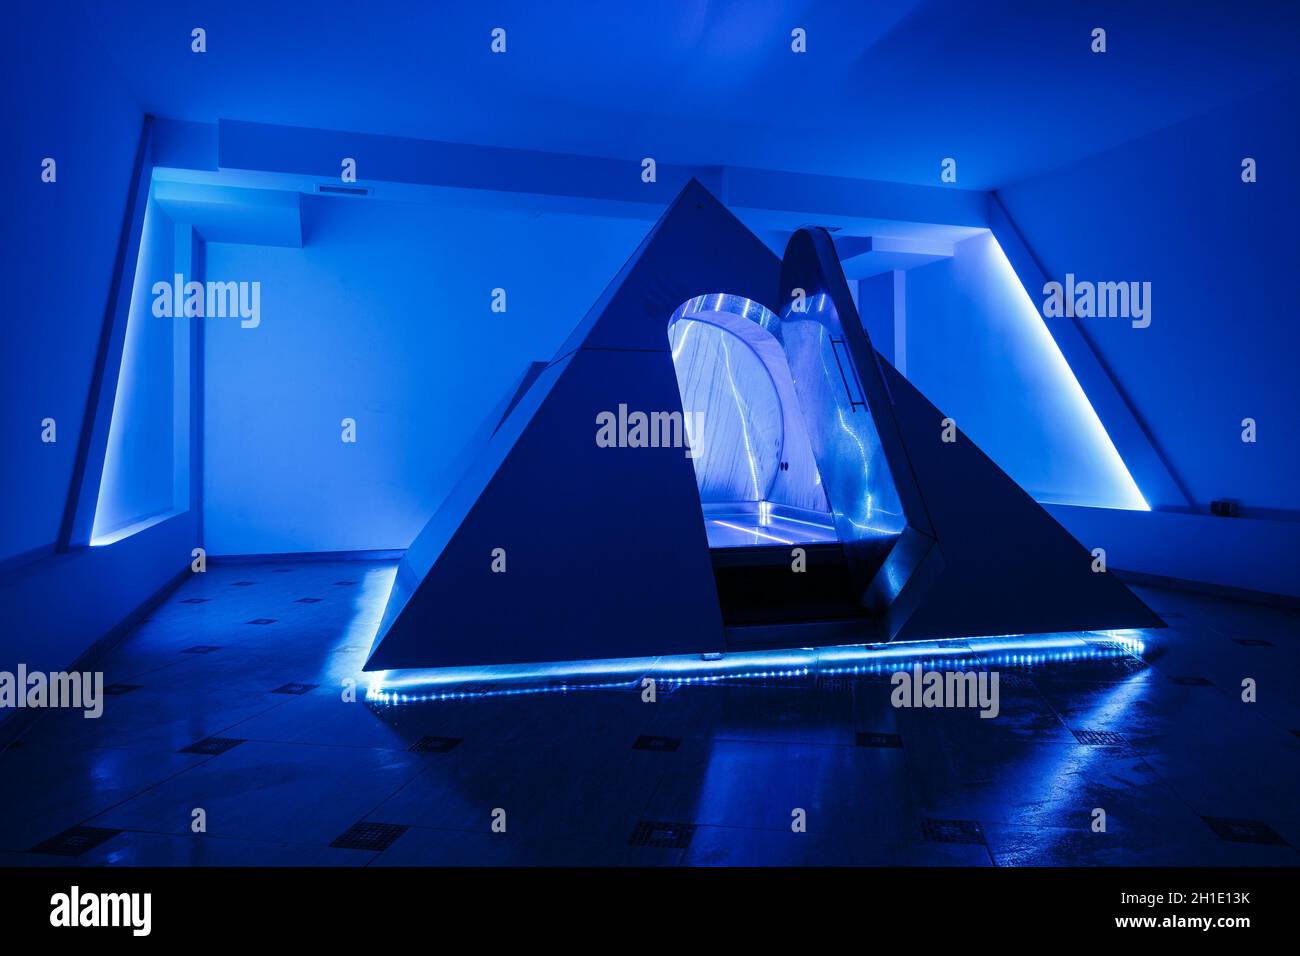 Fotocamera flottante nella forma di una piramide nel centro di ricreazione. Floatinh effetto positivo sul vostro corpo. Avete una sensazione di leggerezza e ful Foto Stock